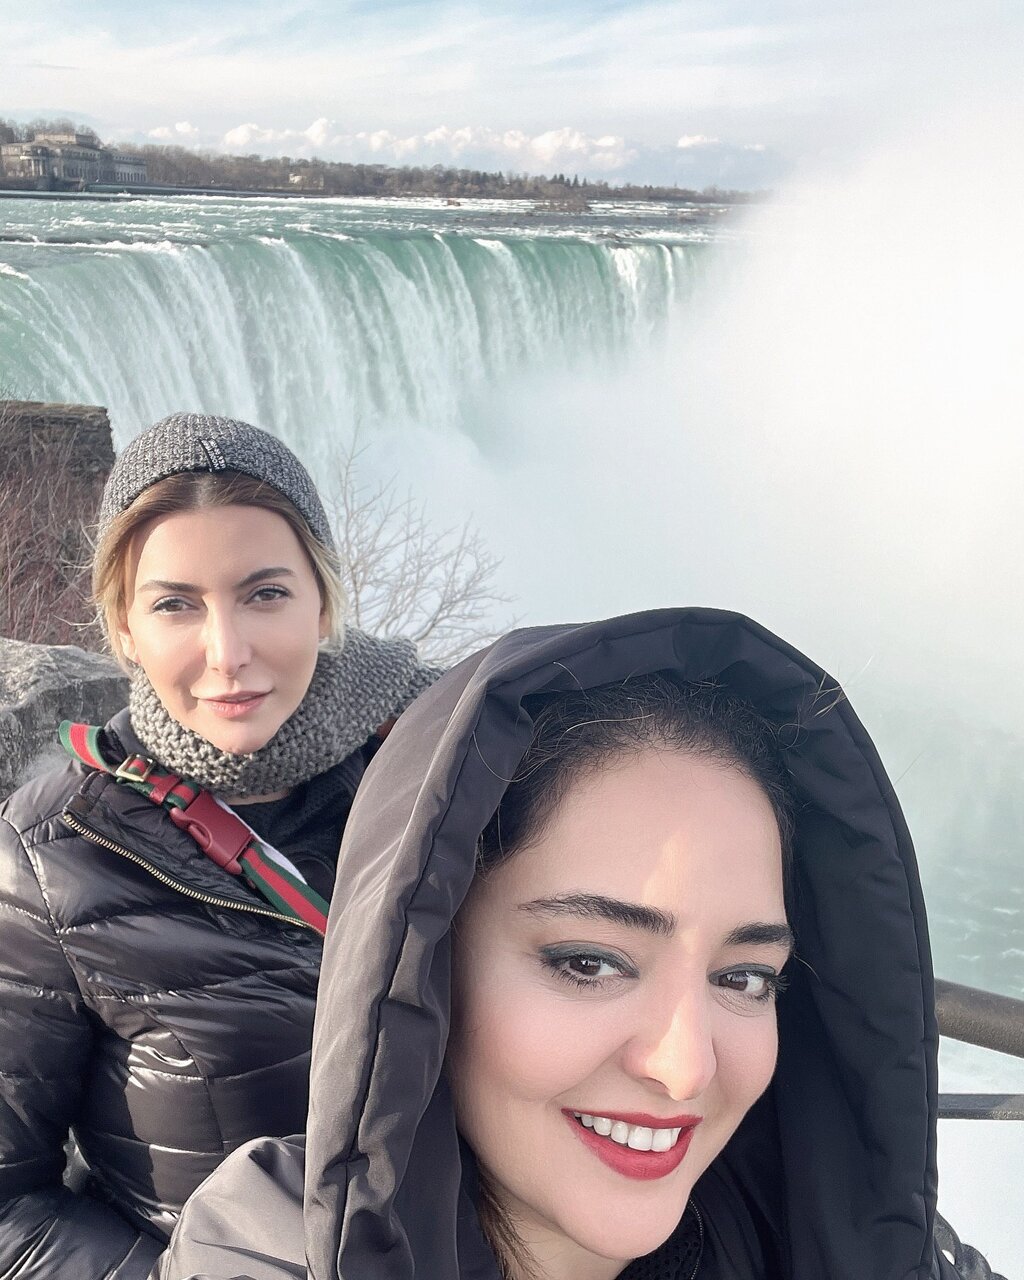 فریبا نادری تولد نرگس محمدی را جشن گرفت عکس فریبا نادری و نرگس محمدی در کنار آبشار نیاگارا